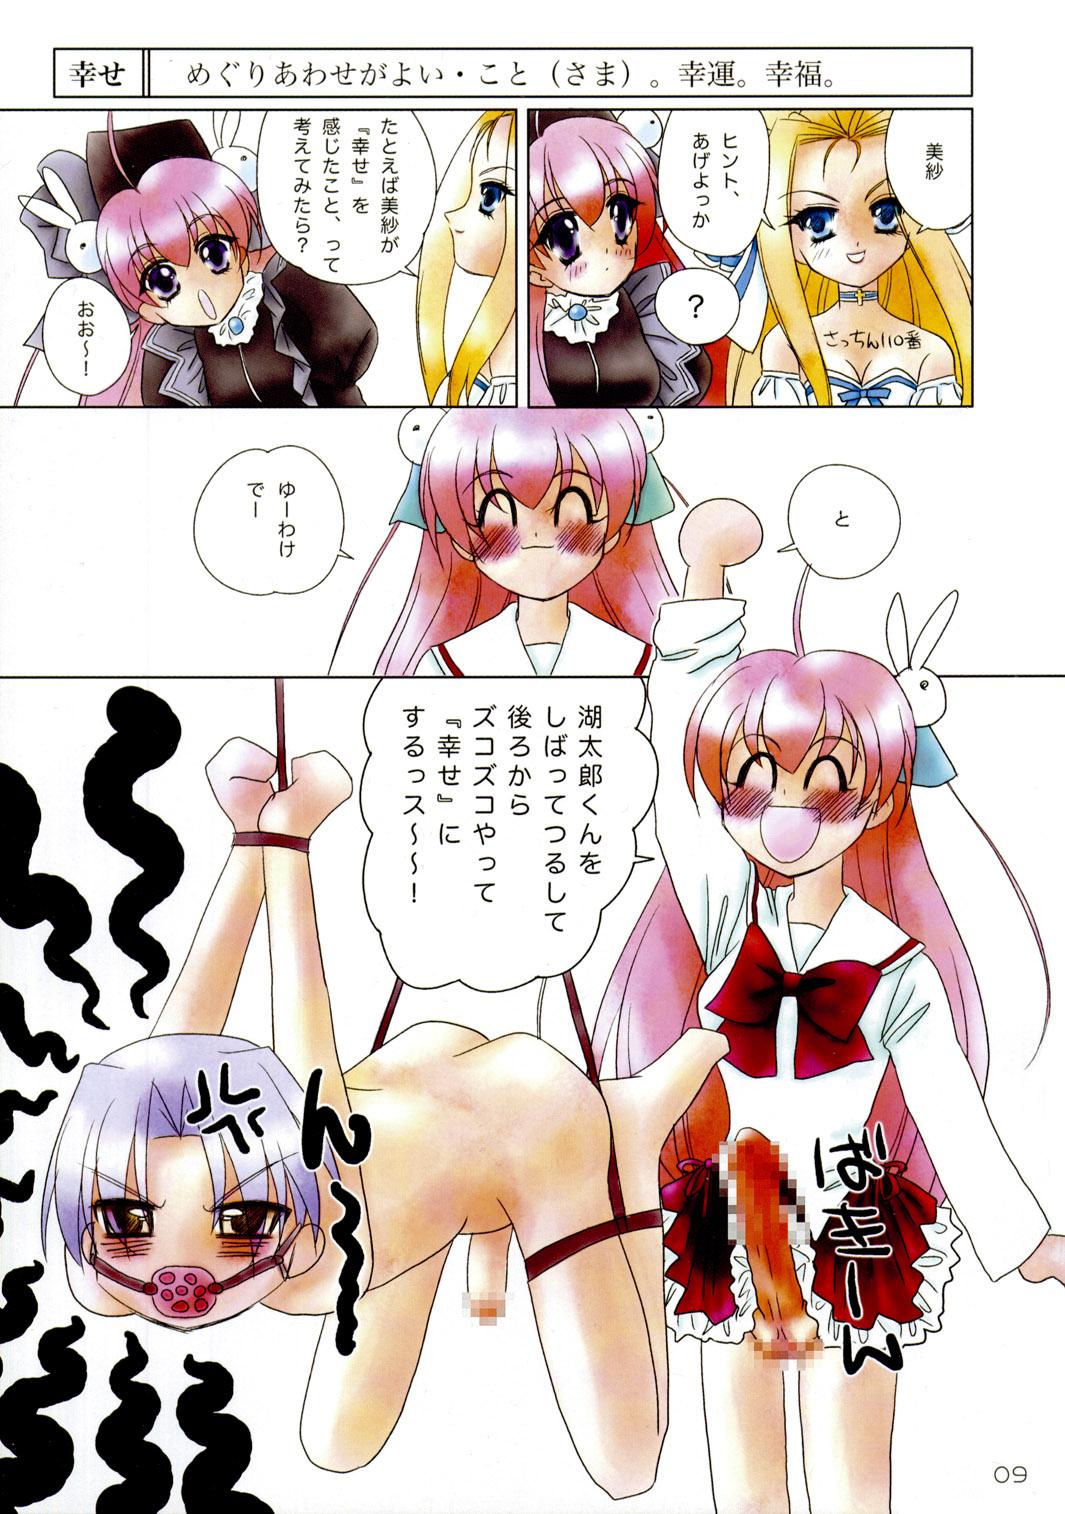 Transvestite Sekai Ukiuki Daizukan 2002 - To heart Kasumin Figure 17 Petite princess yucie Sexy Whores - Page 8